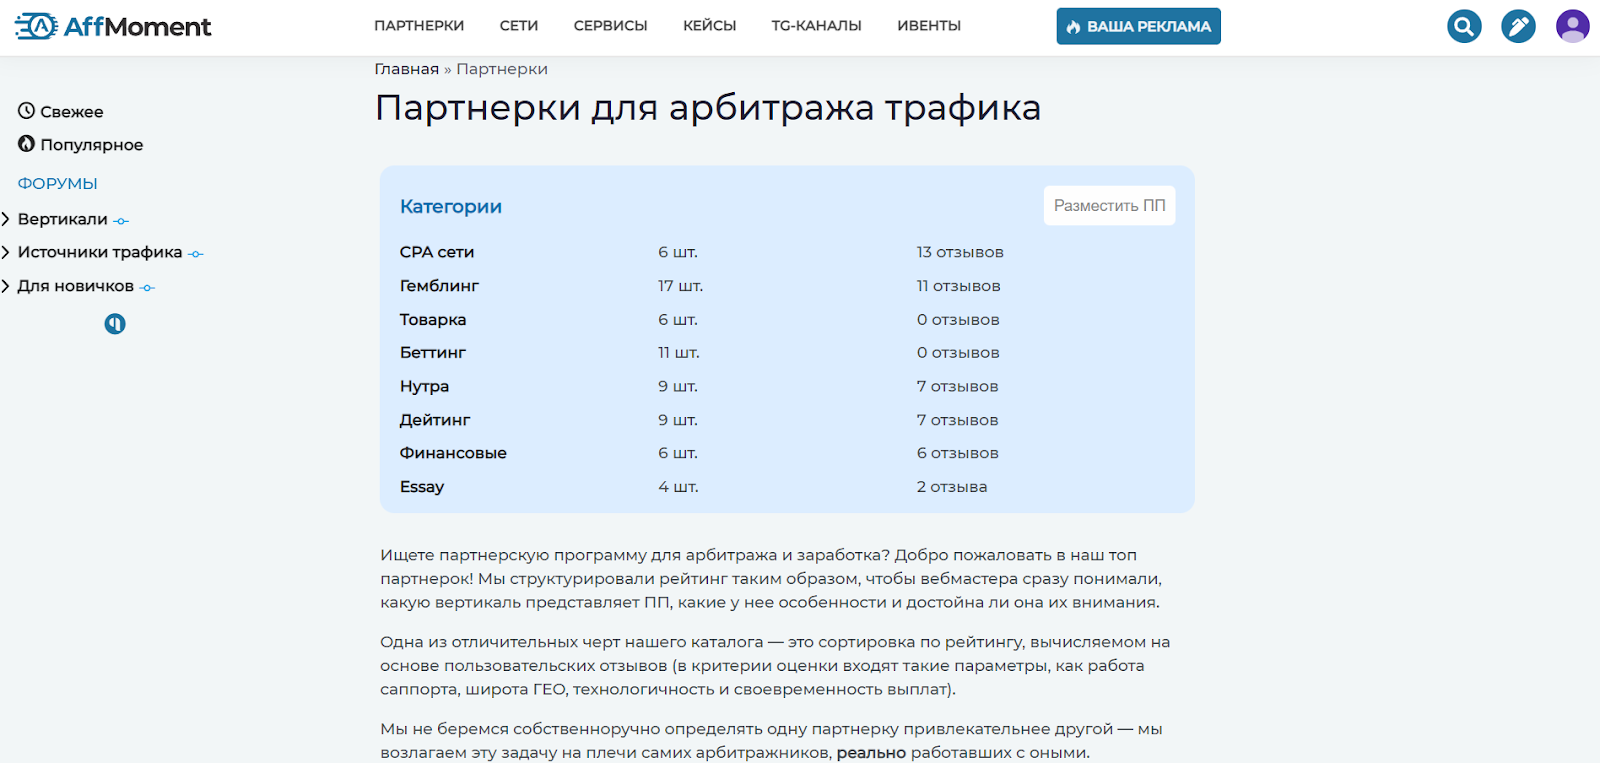 Бесплатный заработок в телеграмме без вложений на русском языке фото 100